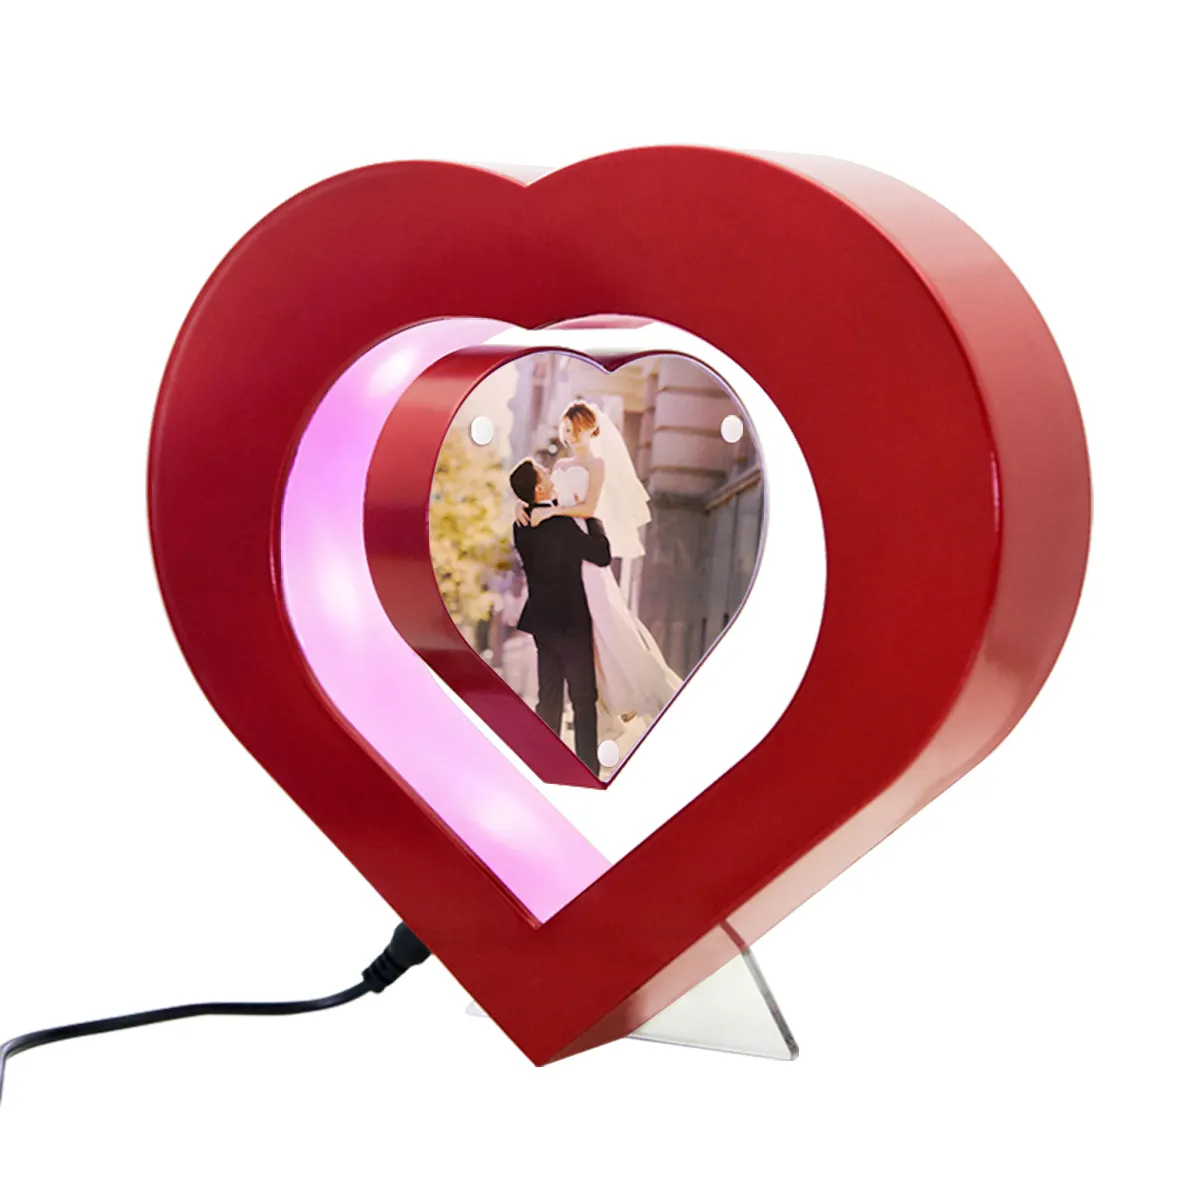 รูปหัวใจแม่เหล็กลอยกรอบรูปตกแต่งงานฝีมือของขวัญไฟฟ้าตกแต่งงานฝีมือ